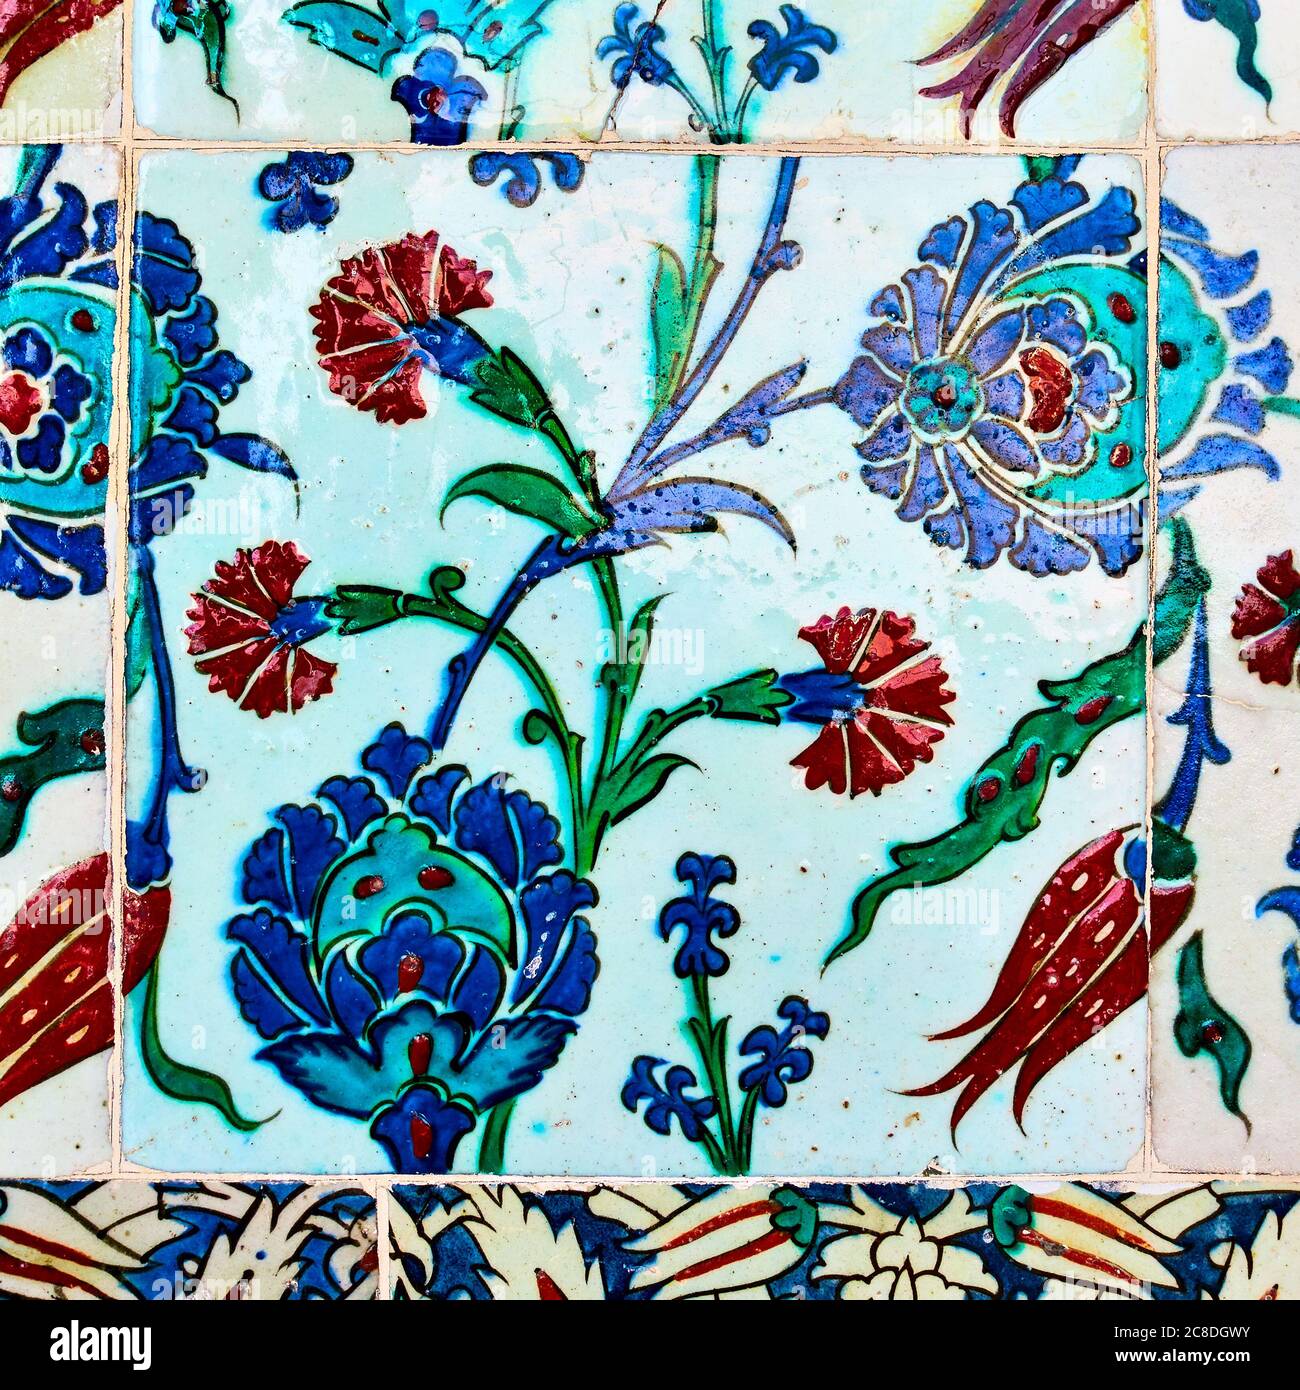 Carreaux de céramique vitrifiée turque anciens avec motif floral Banque D'Images